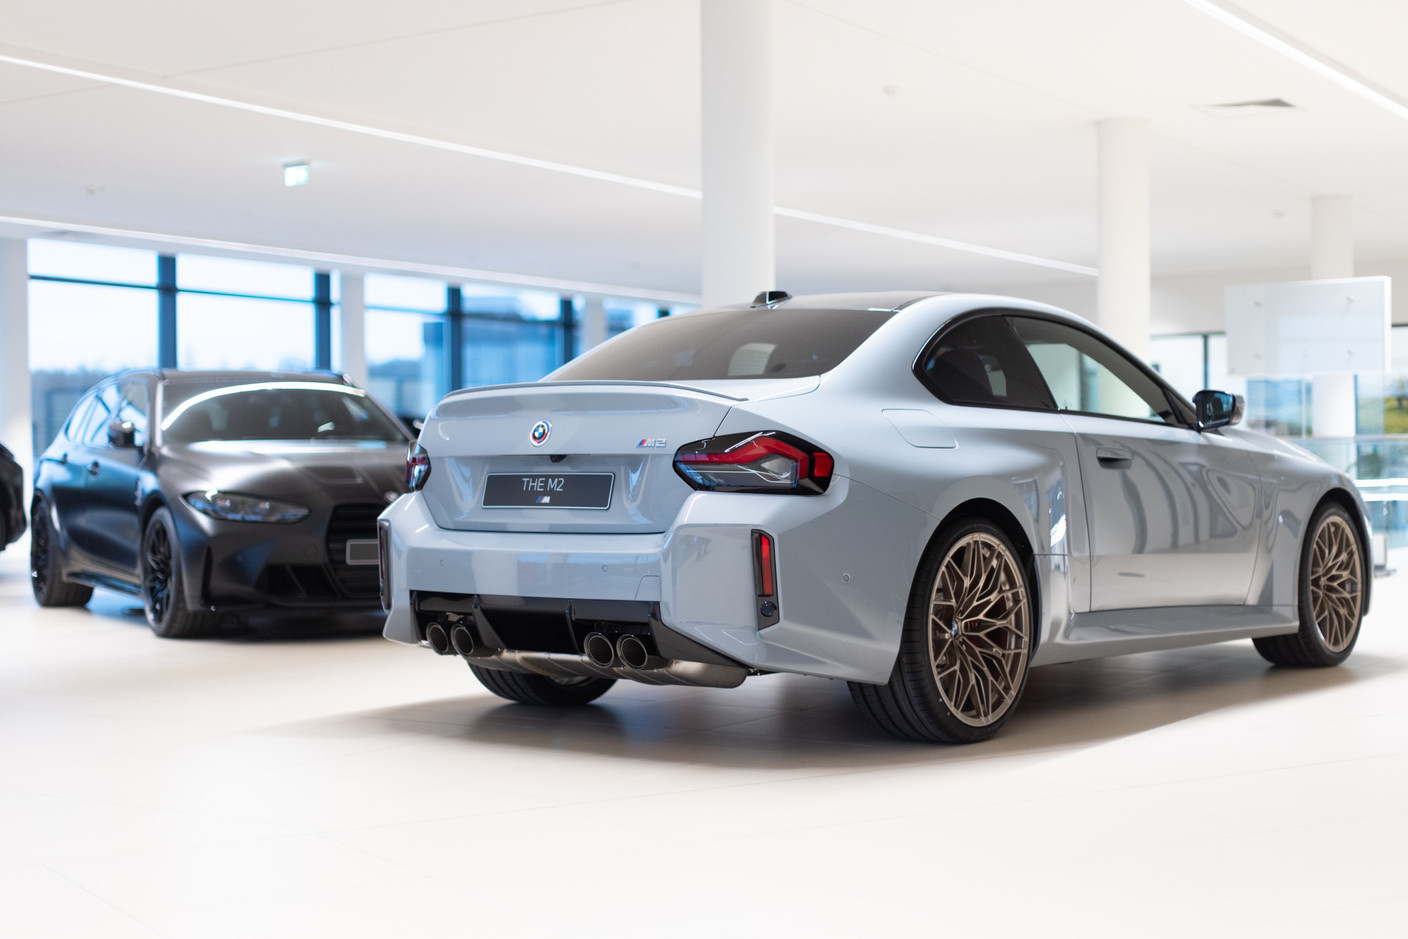 Autofestival 2023, en el showroom del concesionario Muzzolini: el nuevo BMW M2 coupé.  (Guy Wolff/Casa moderna)